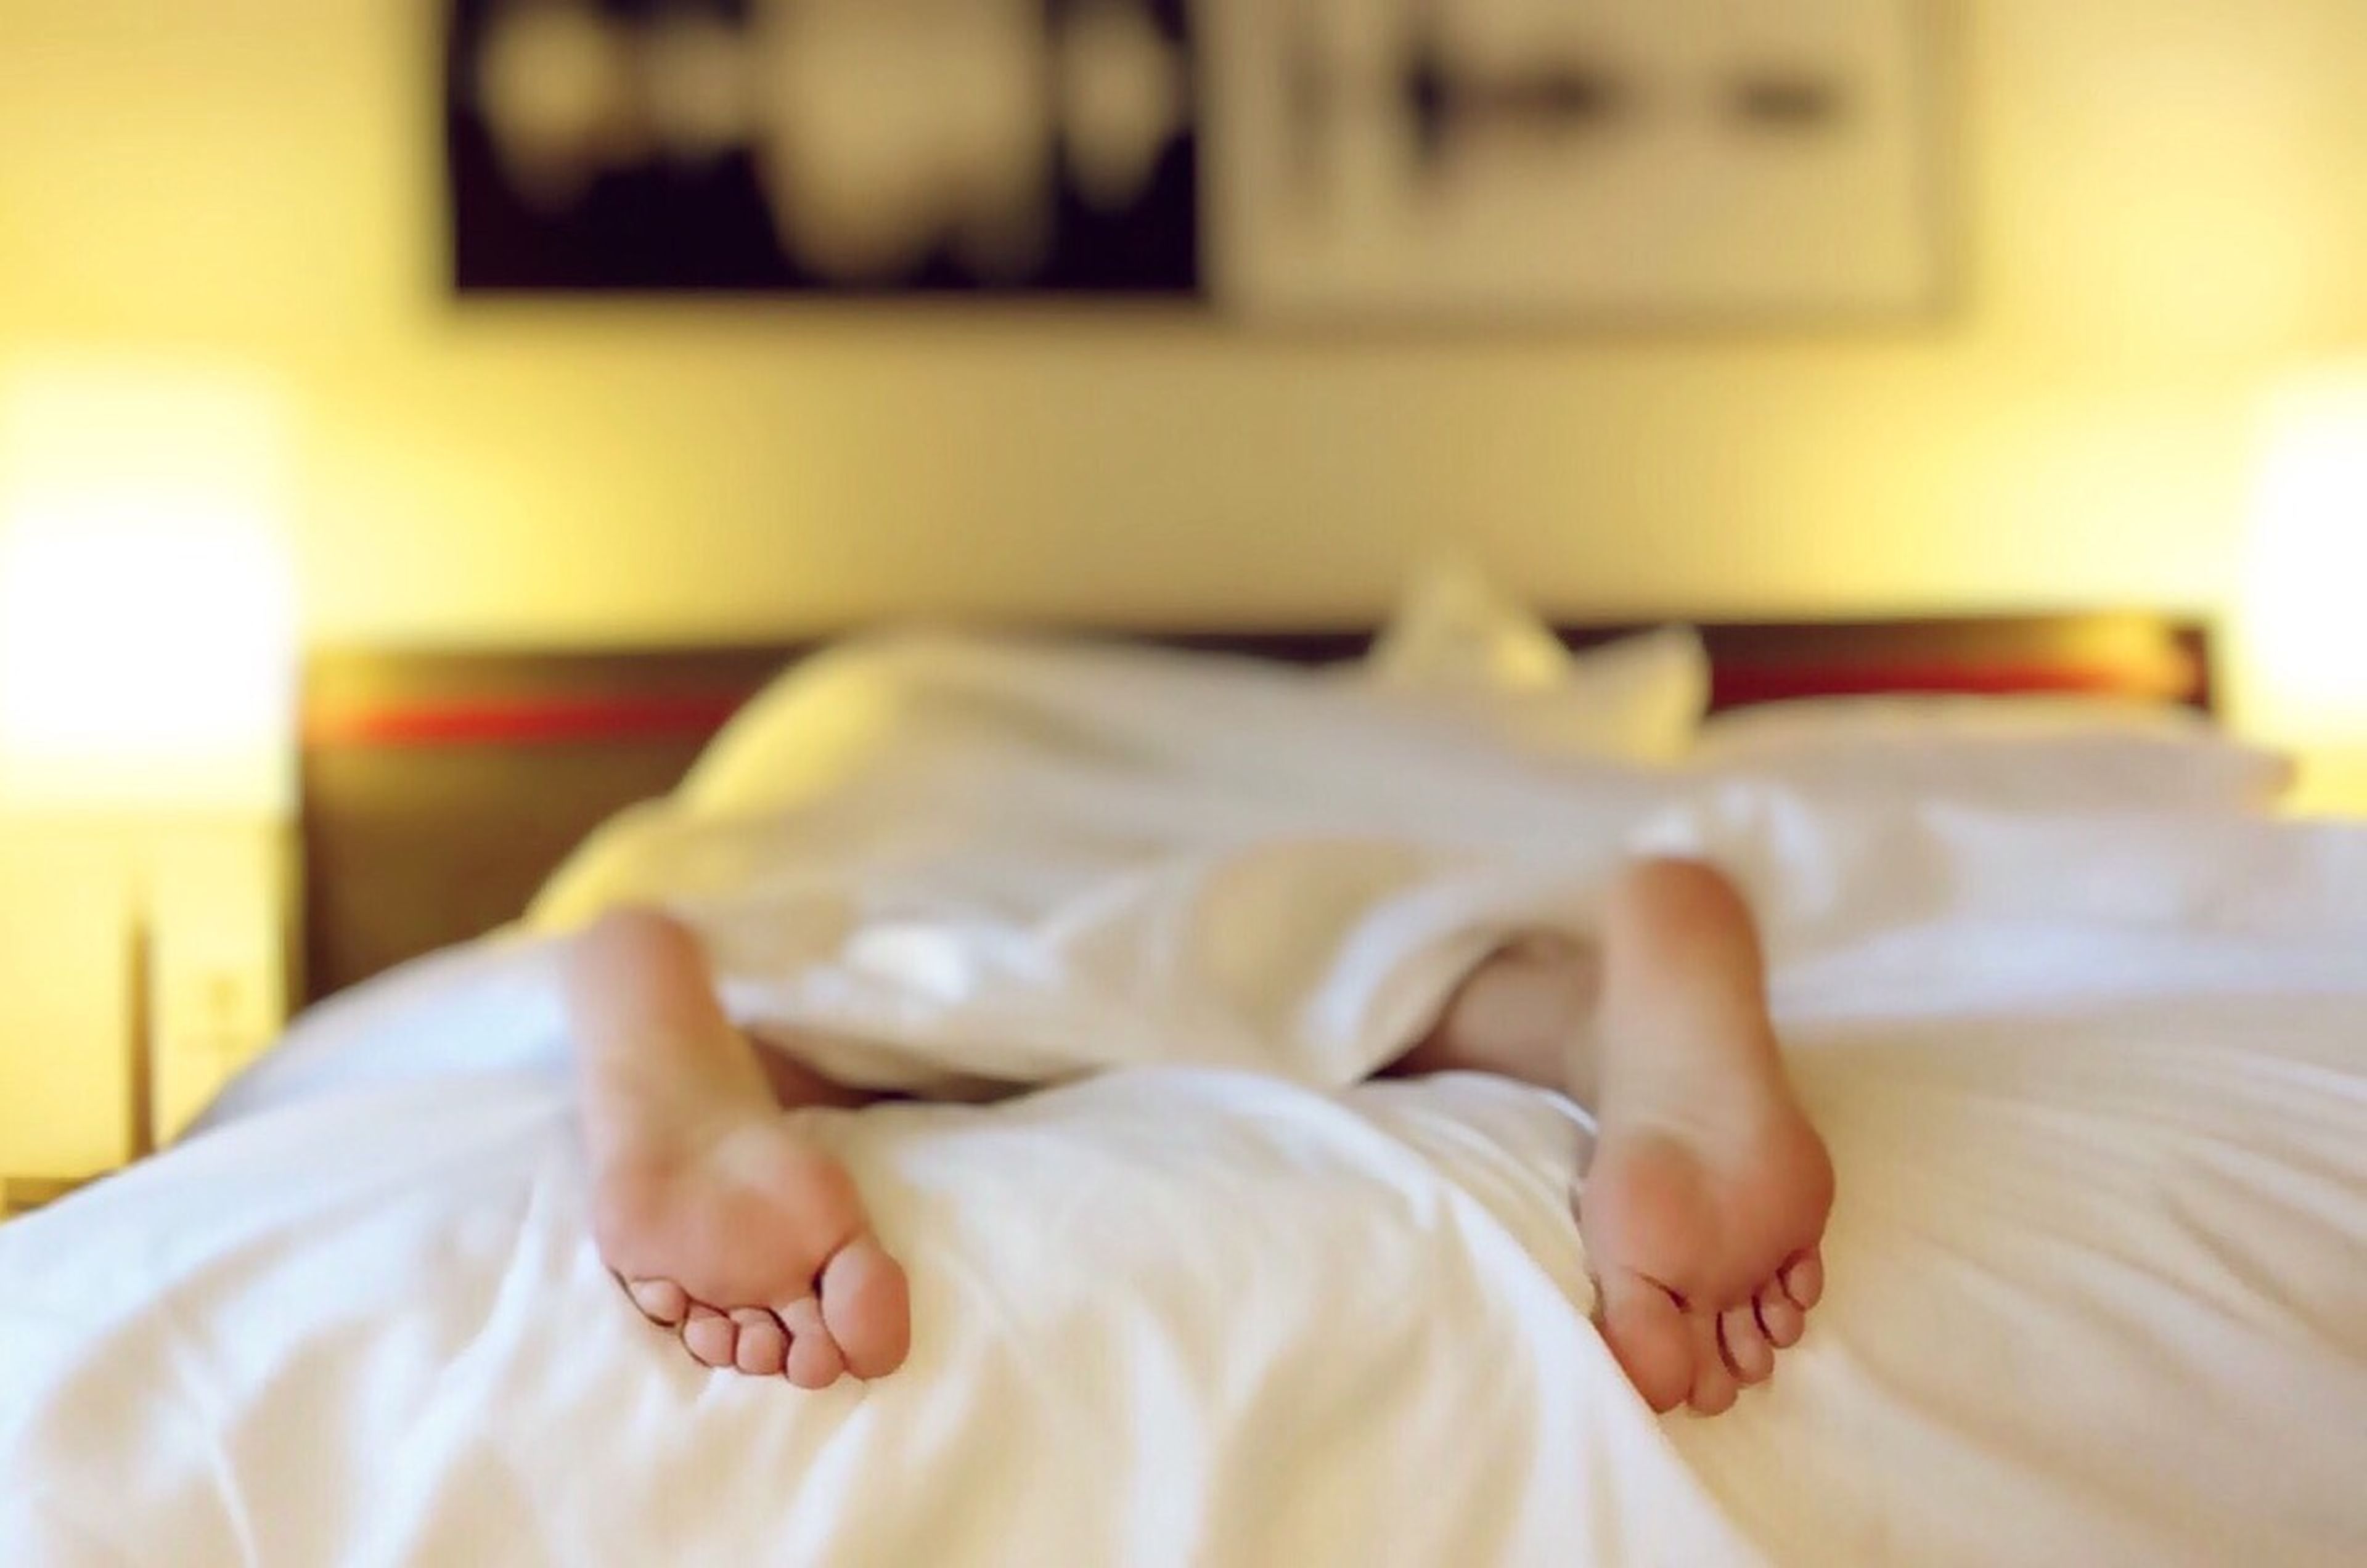 Un estudio señala que dormir mucho en fin de semana te ayuda a recuperar horas de sueño